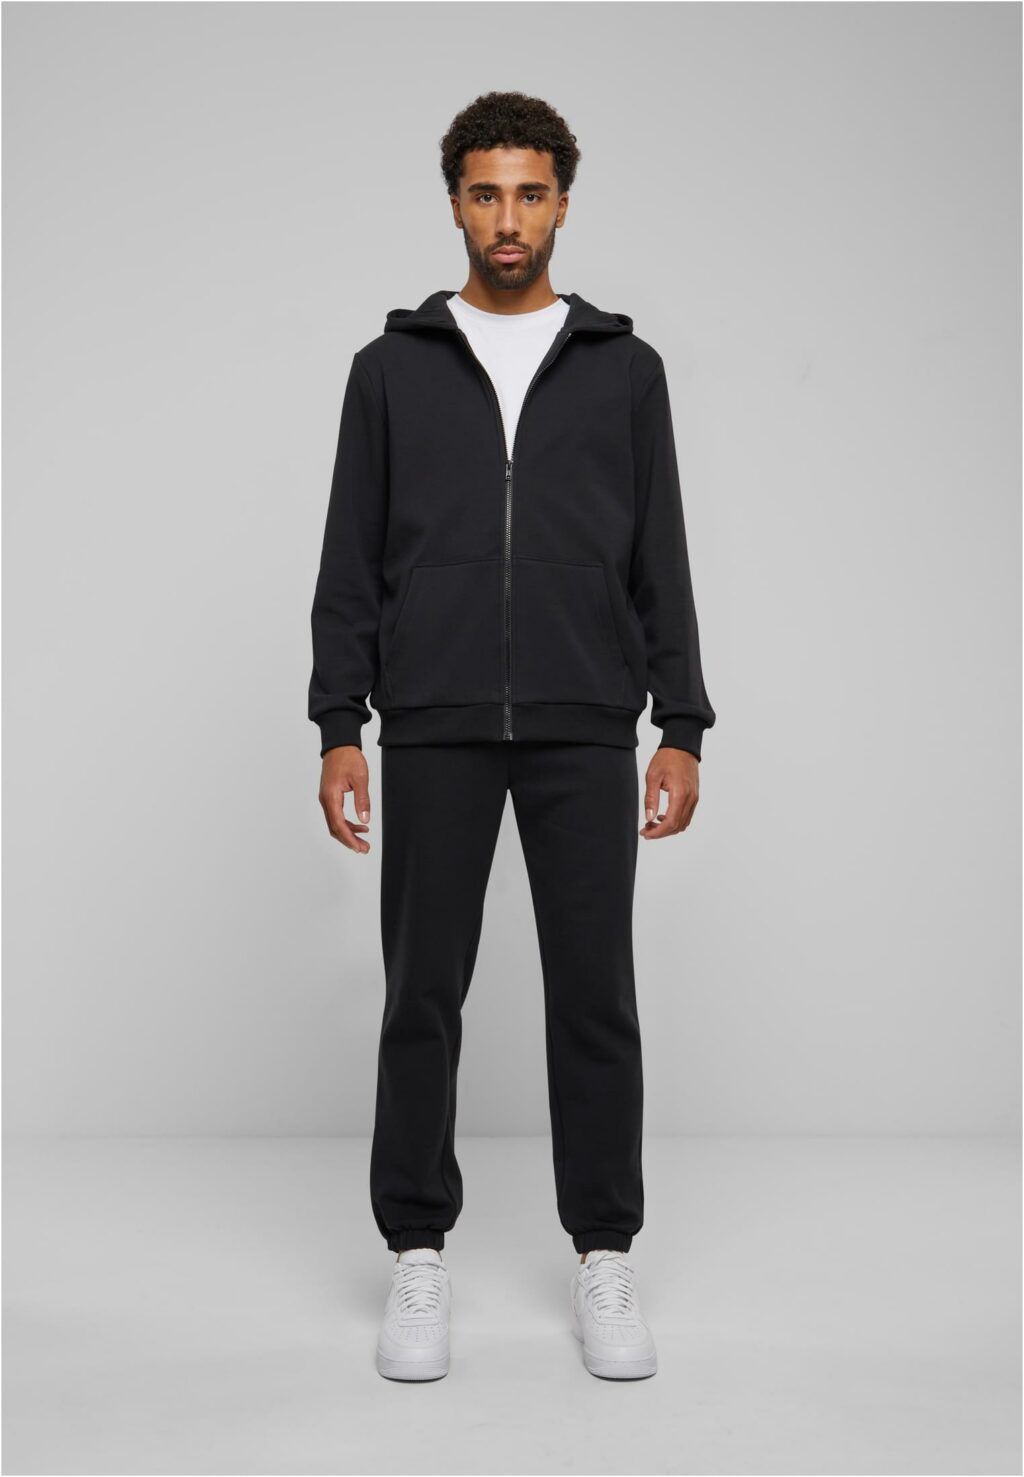 Urban Classics Cozy Sweatpants black TB6702